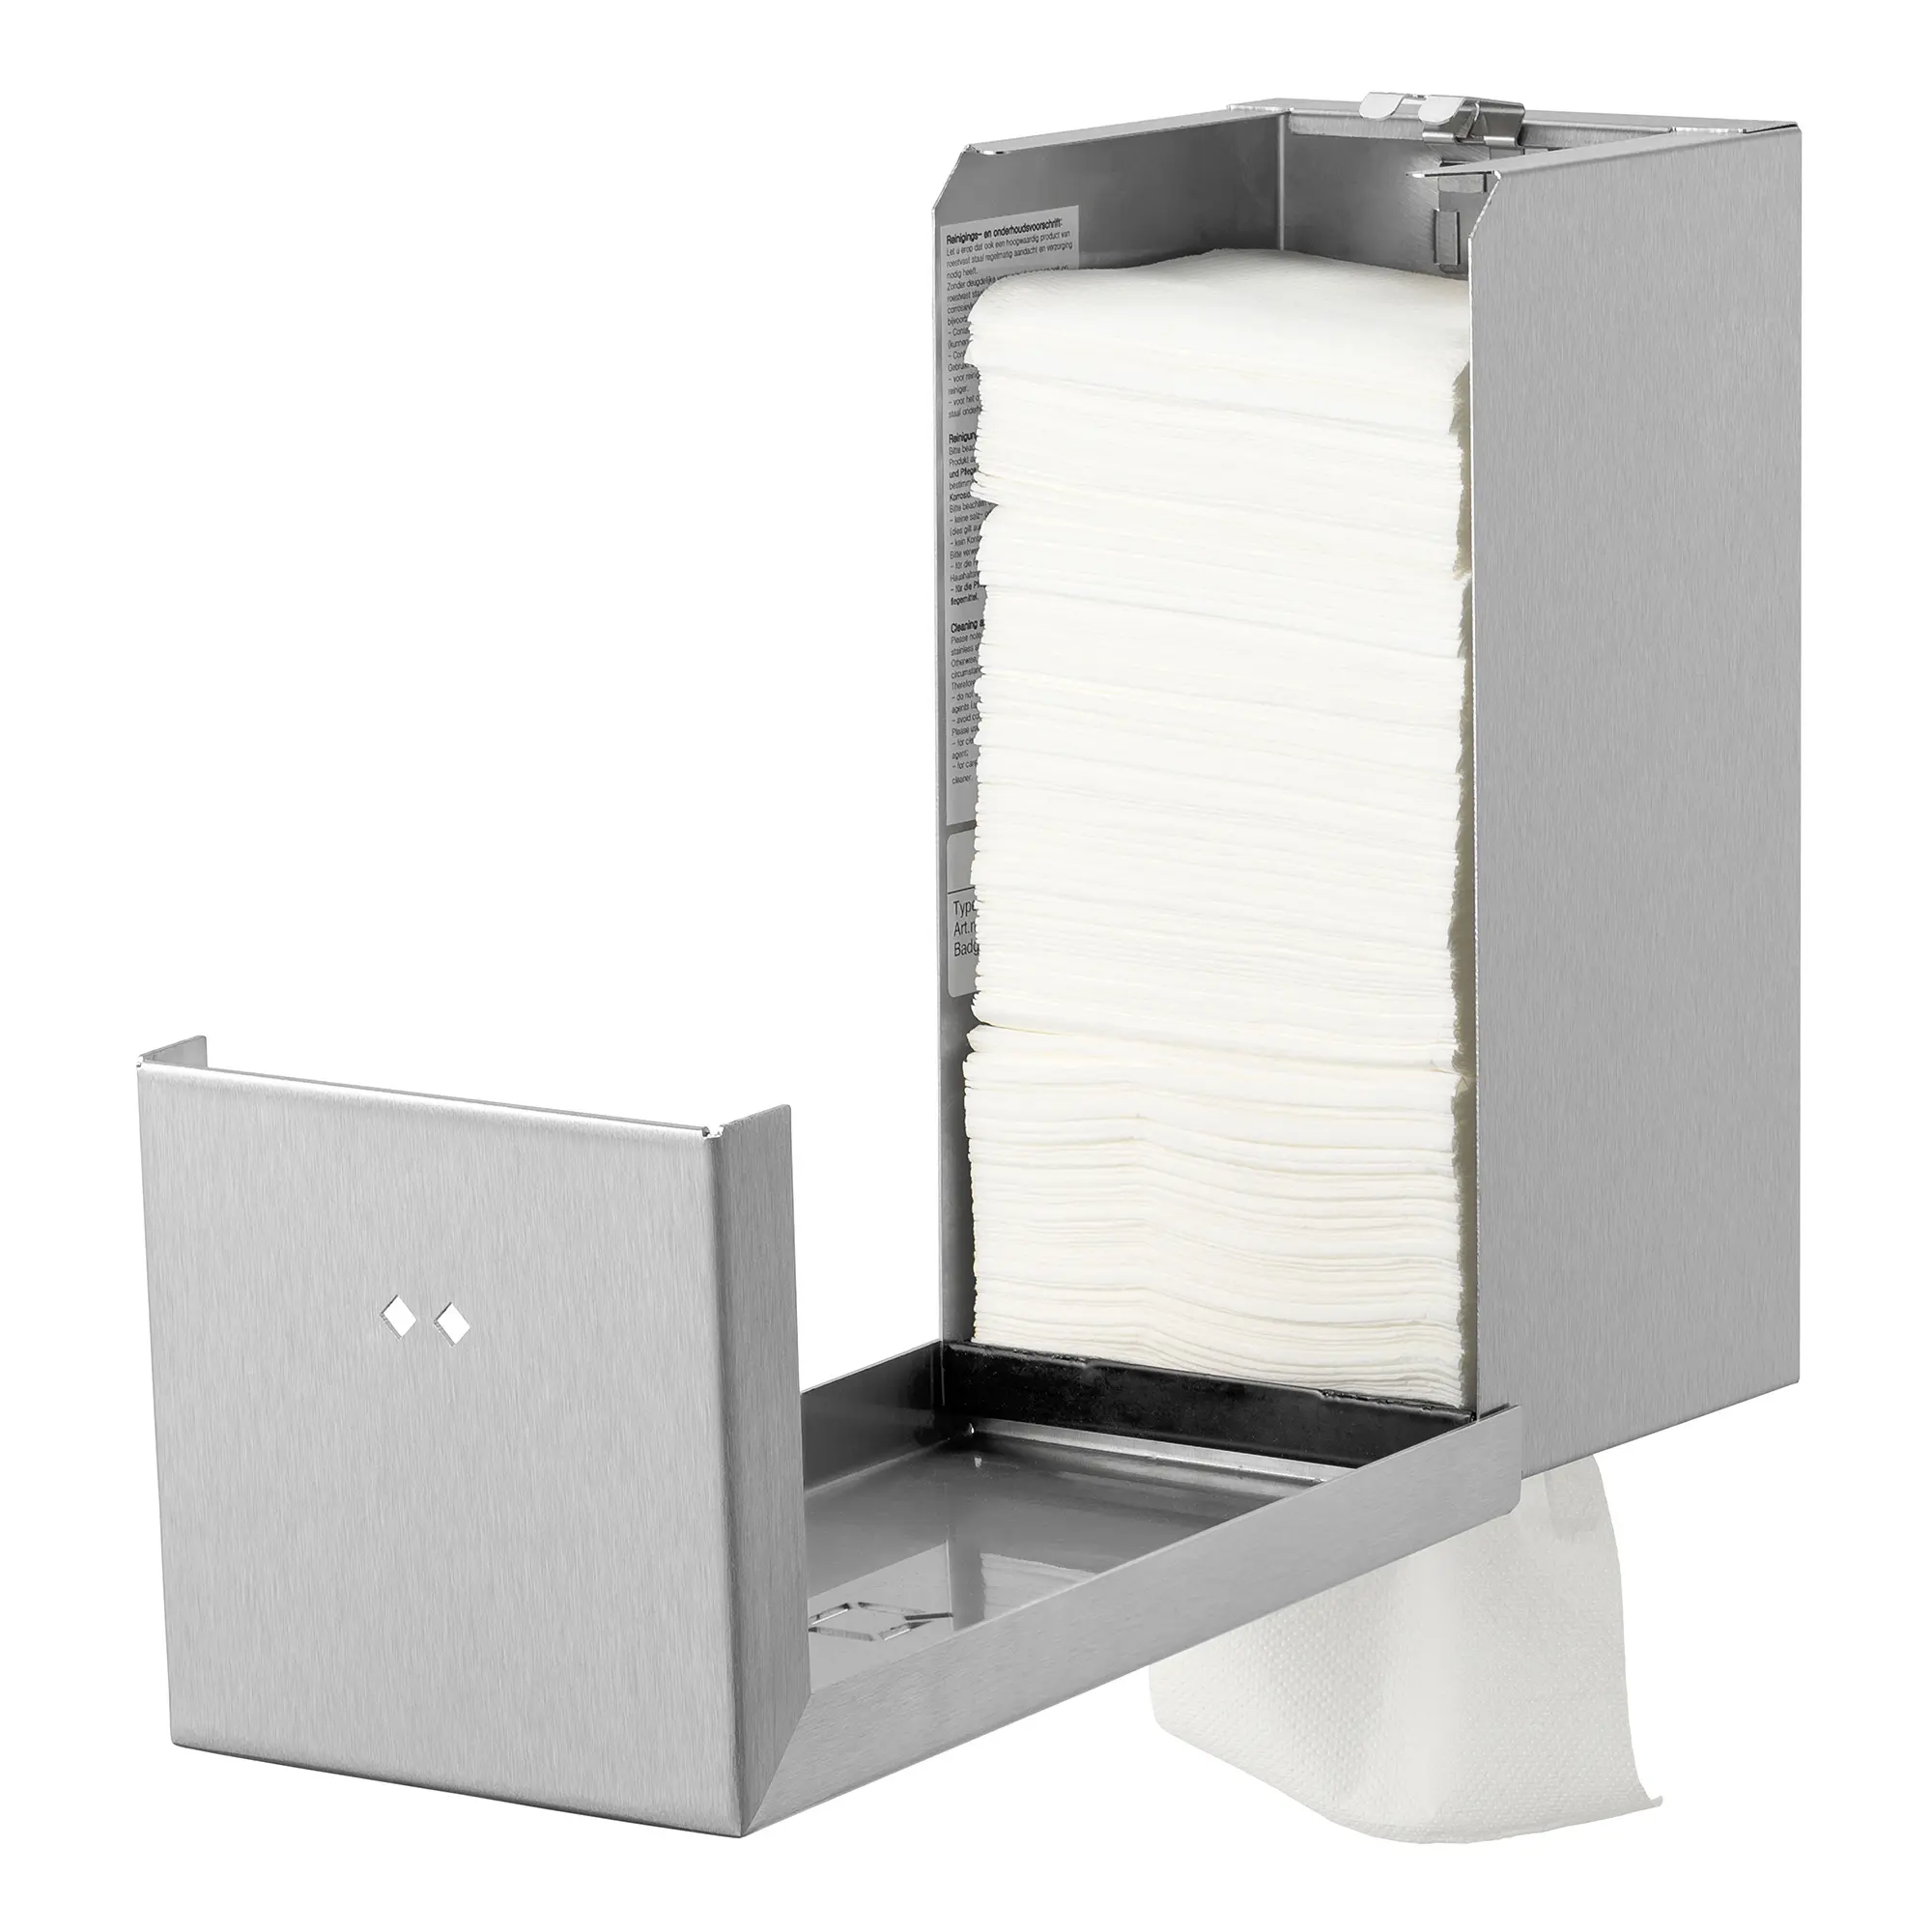 Qbic-line Toilettenpapierspender Einzelblatt QTT2 SSL Edelstahl matt Edelstahlfront abschliessbar 6995